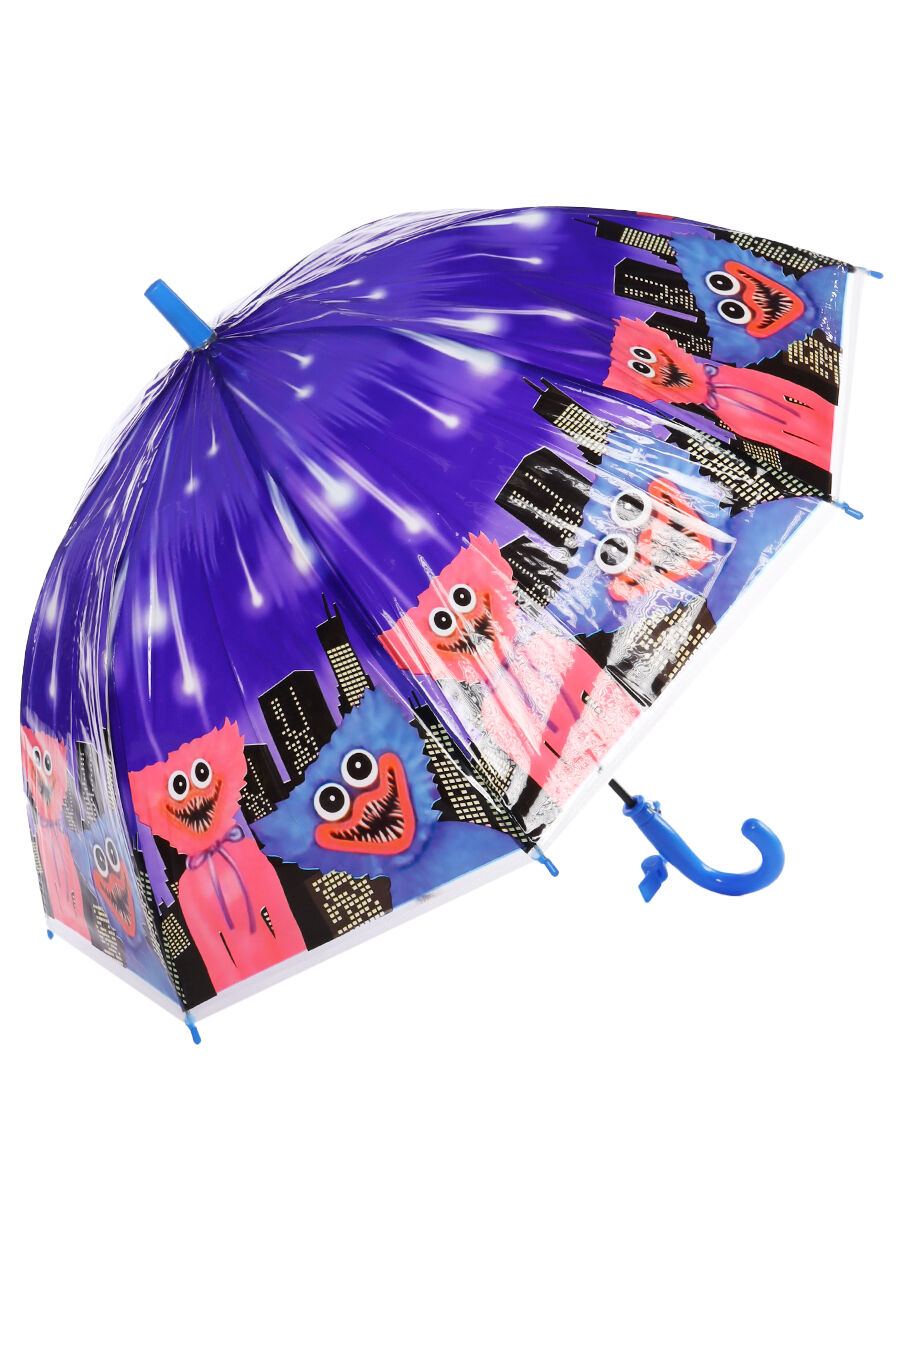 Зонт дет. Panda 204-2 полуавтомат трость (синий)